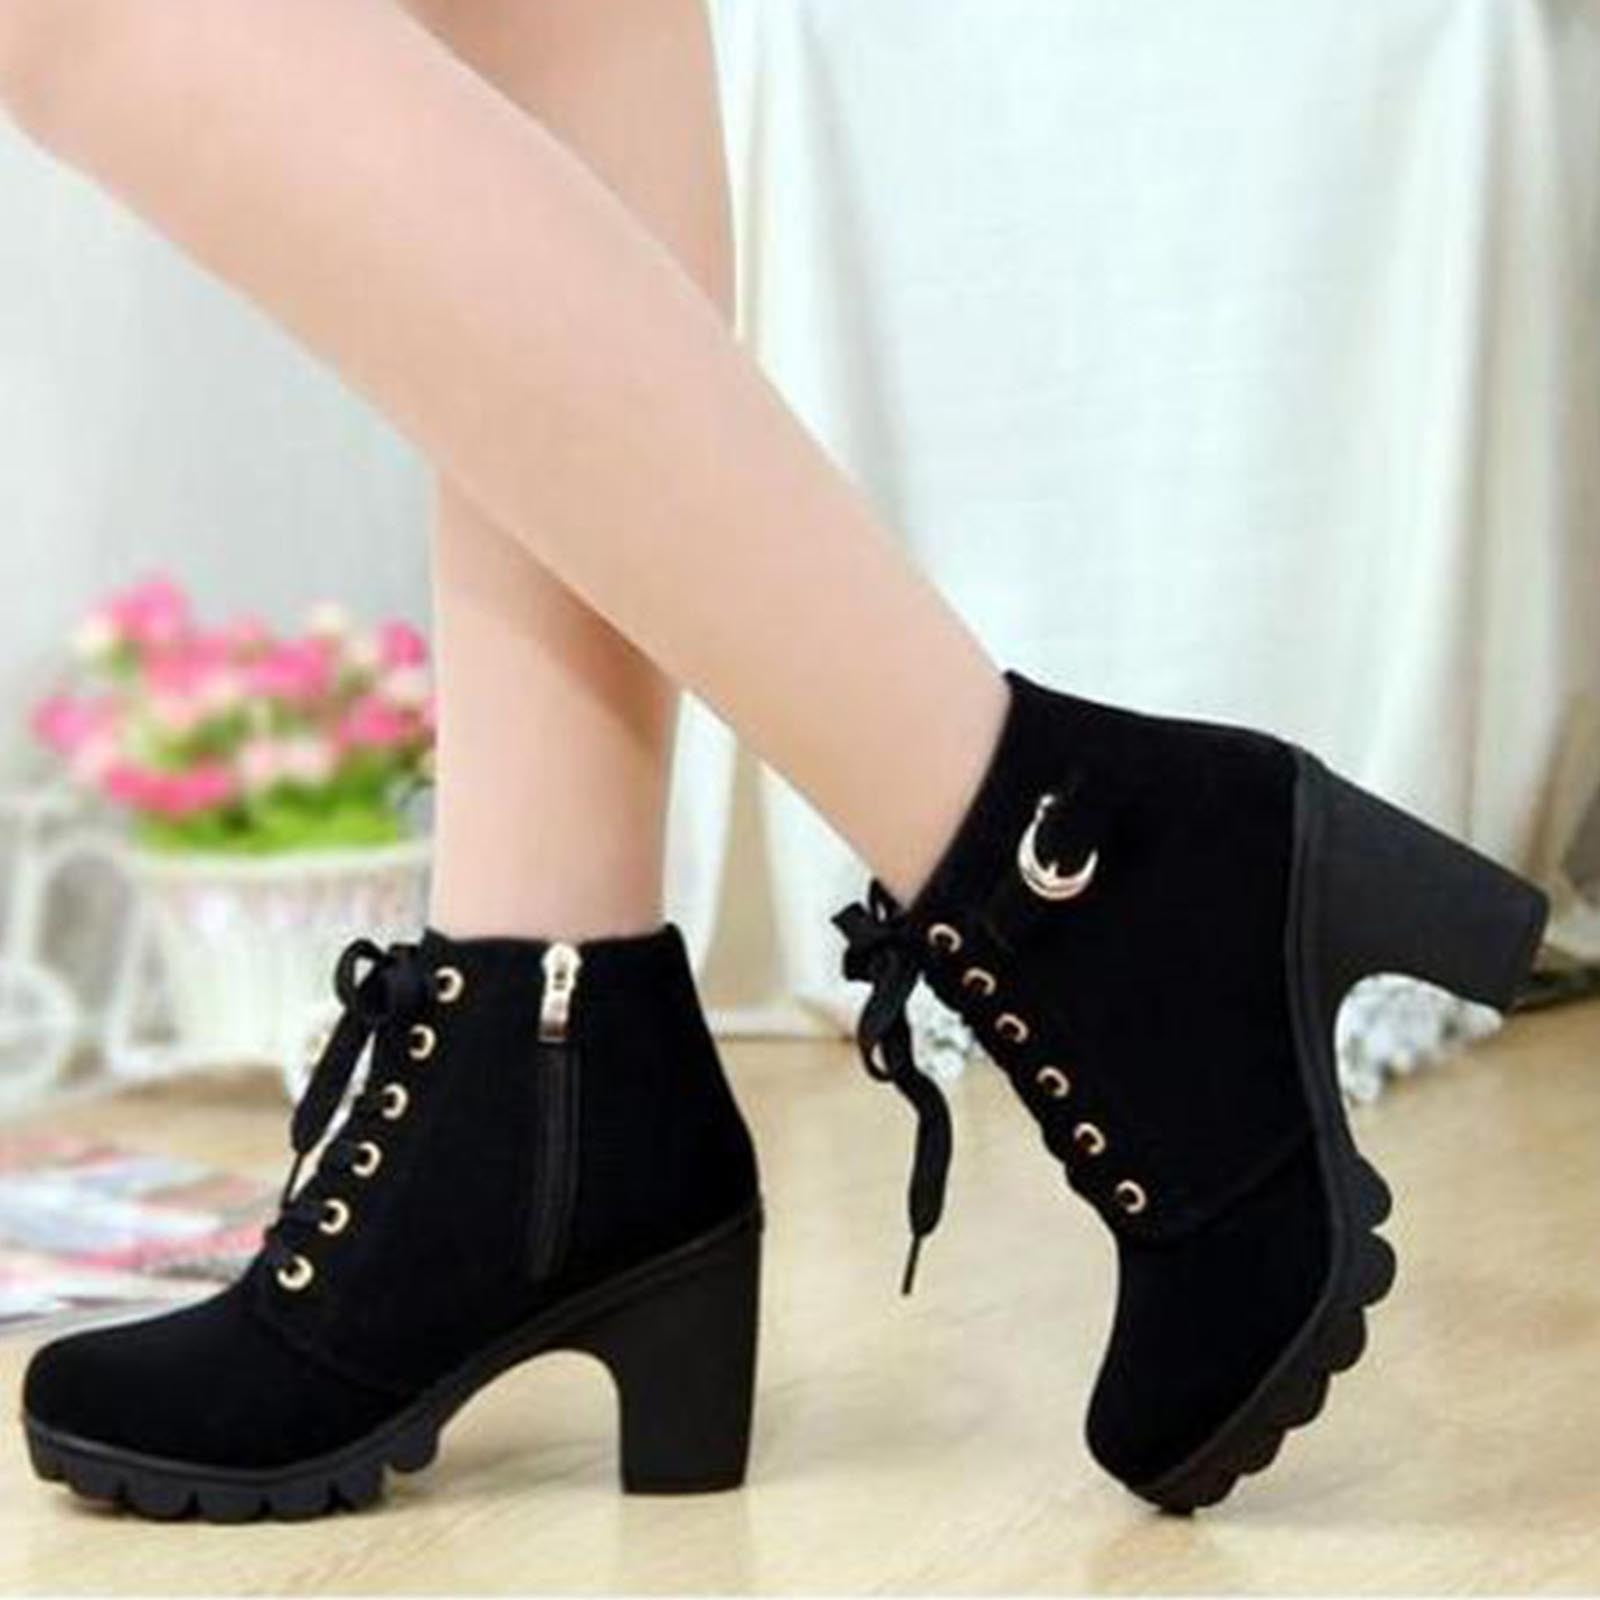 &me Women's Block Heel Boots - Black - Size 6 | BIG W